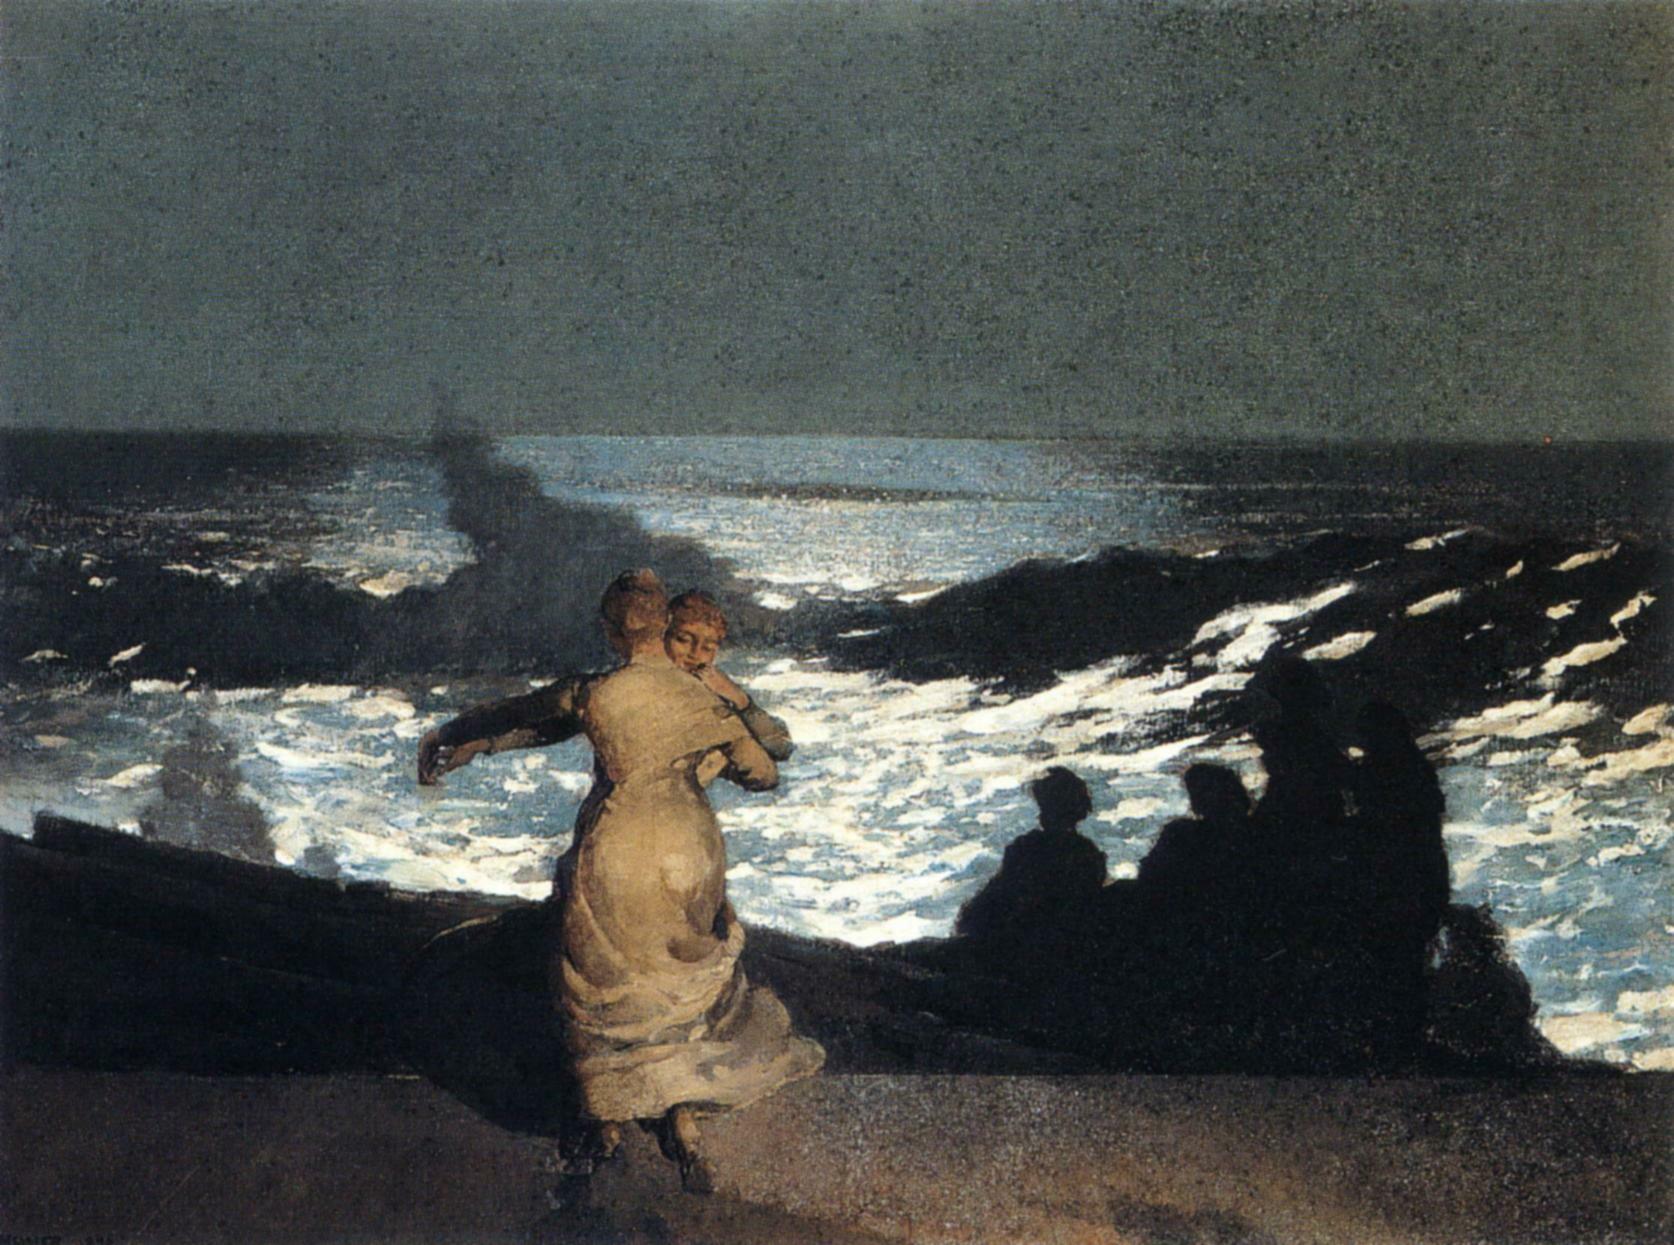 Notte d'estate by Winslow Homer - 1890 - 76.7 x 102 cm Musée d'Orsay